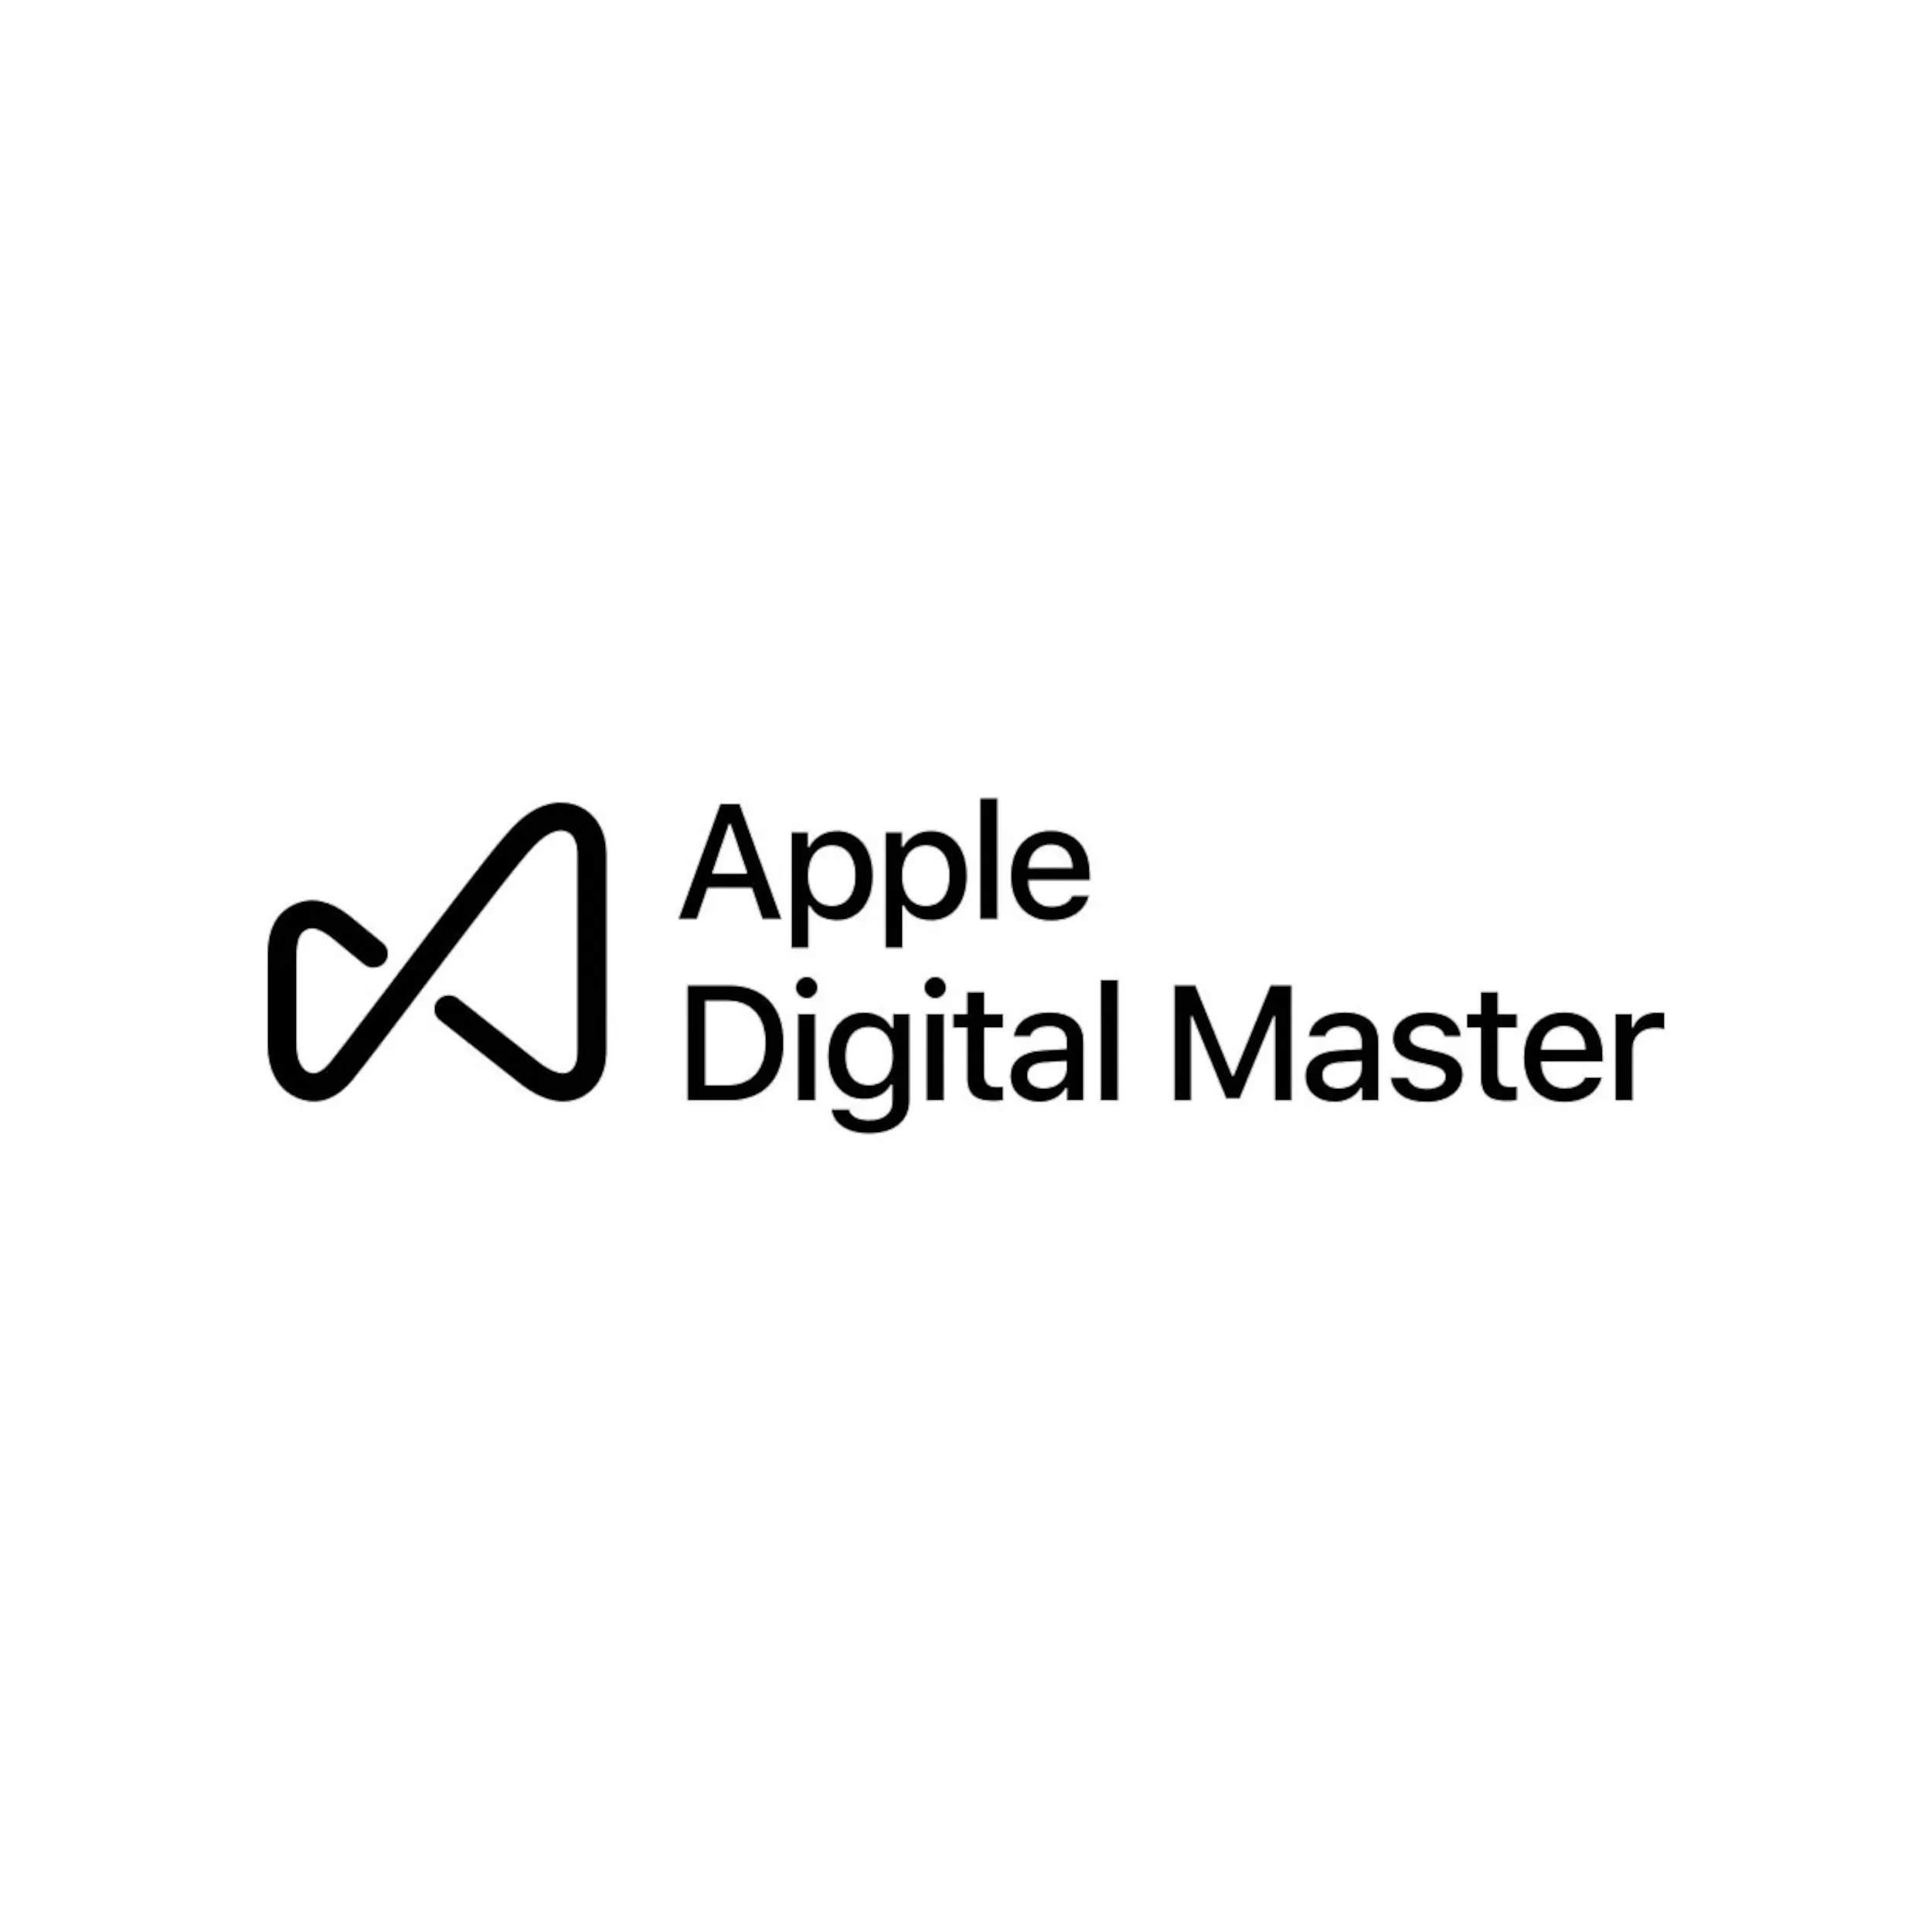 apple digital master logo